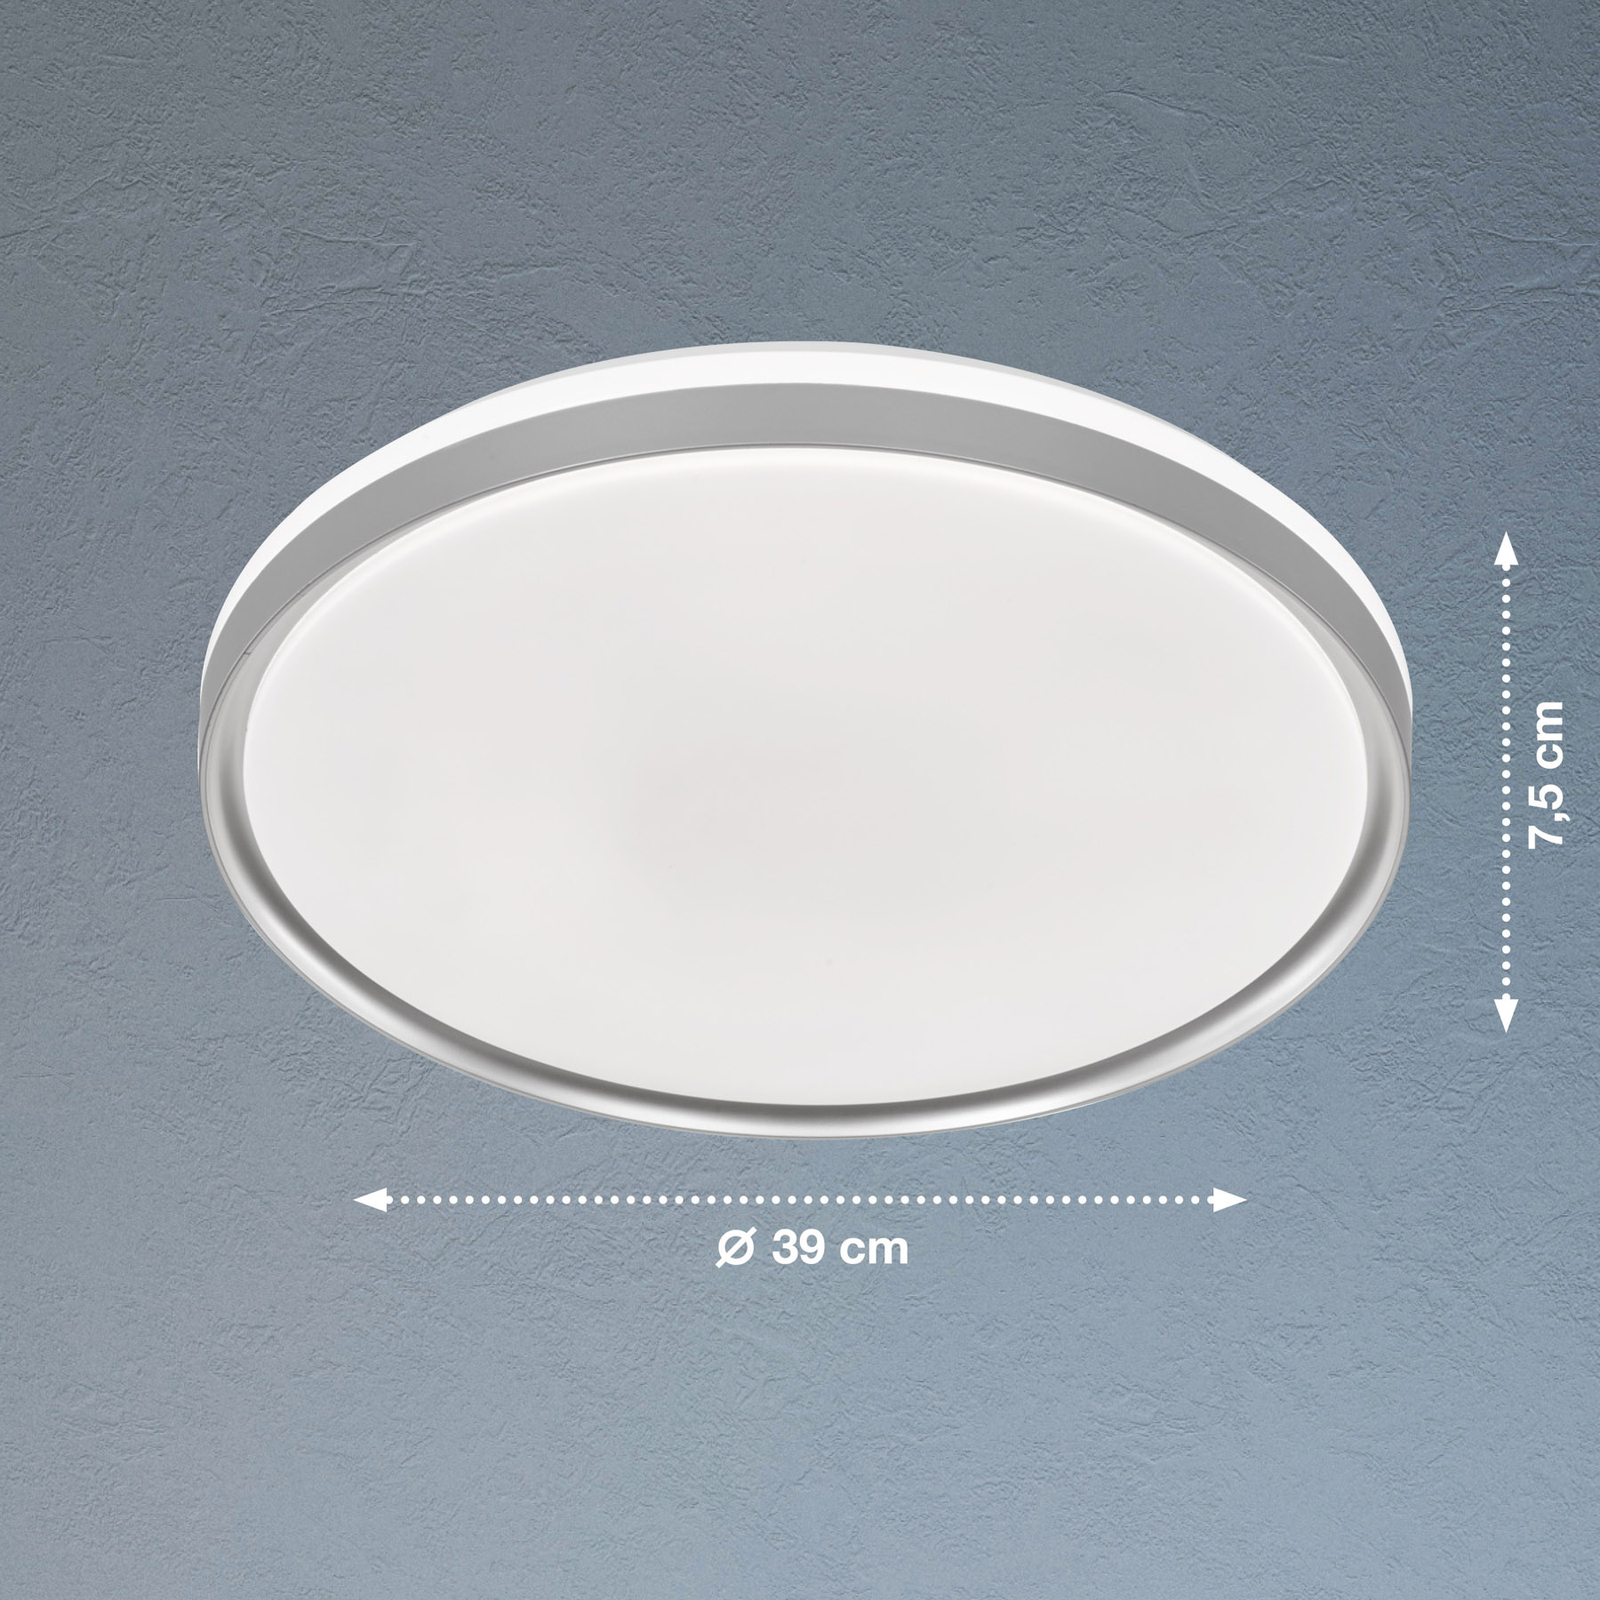 Φωτιστικό οροφής Jaso BS LED, Ø 39 cm, ασημί